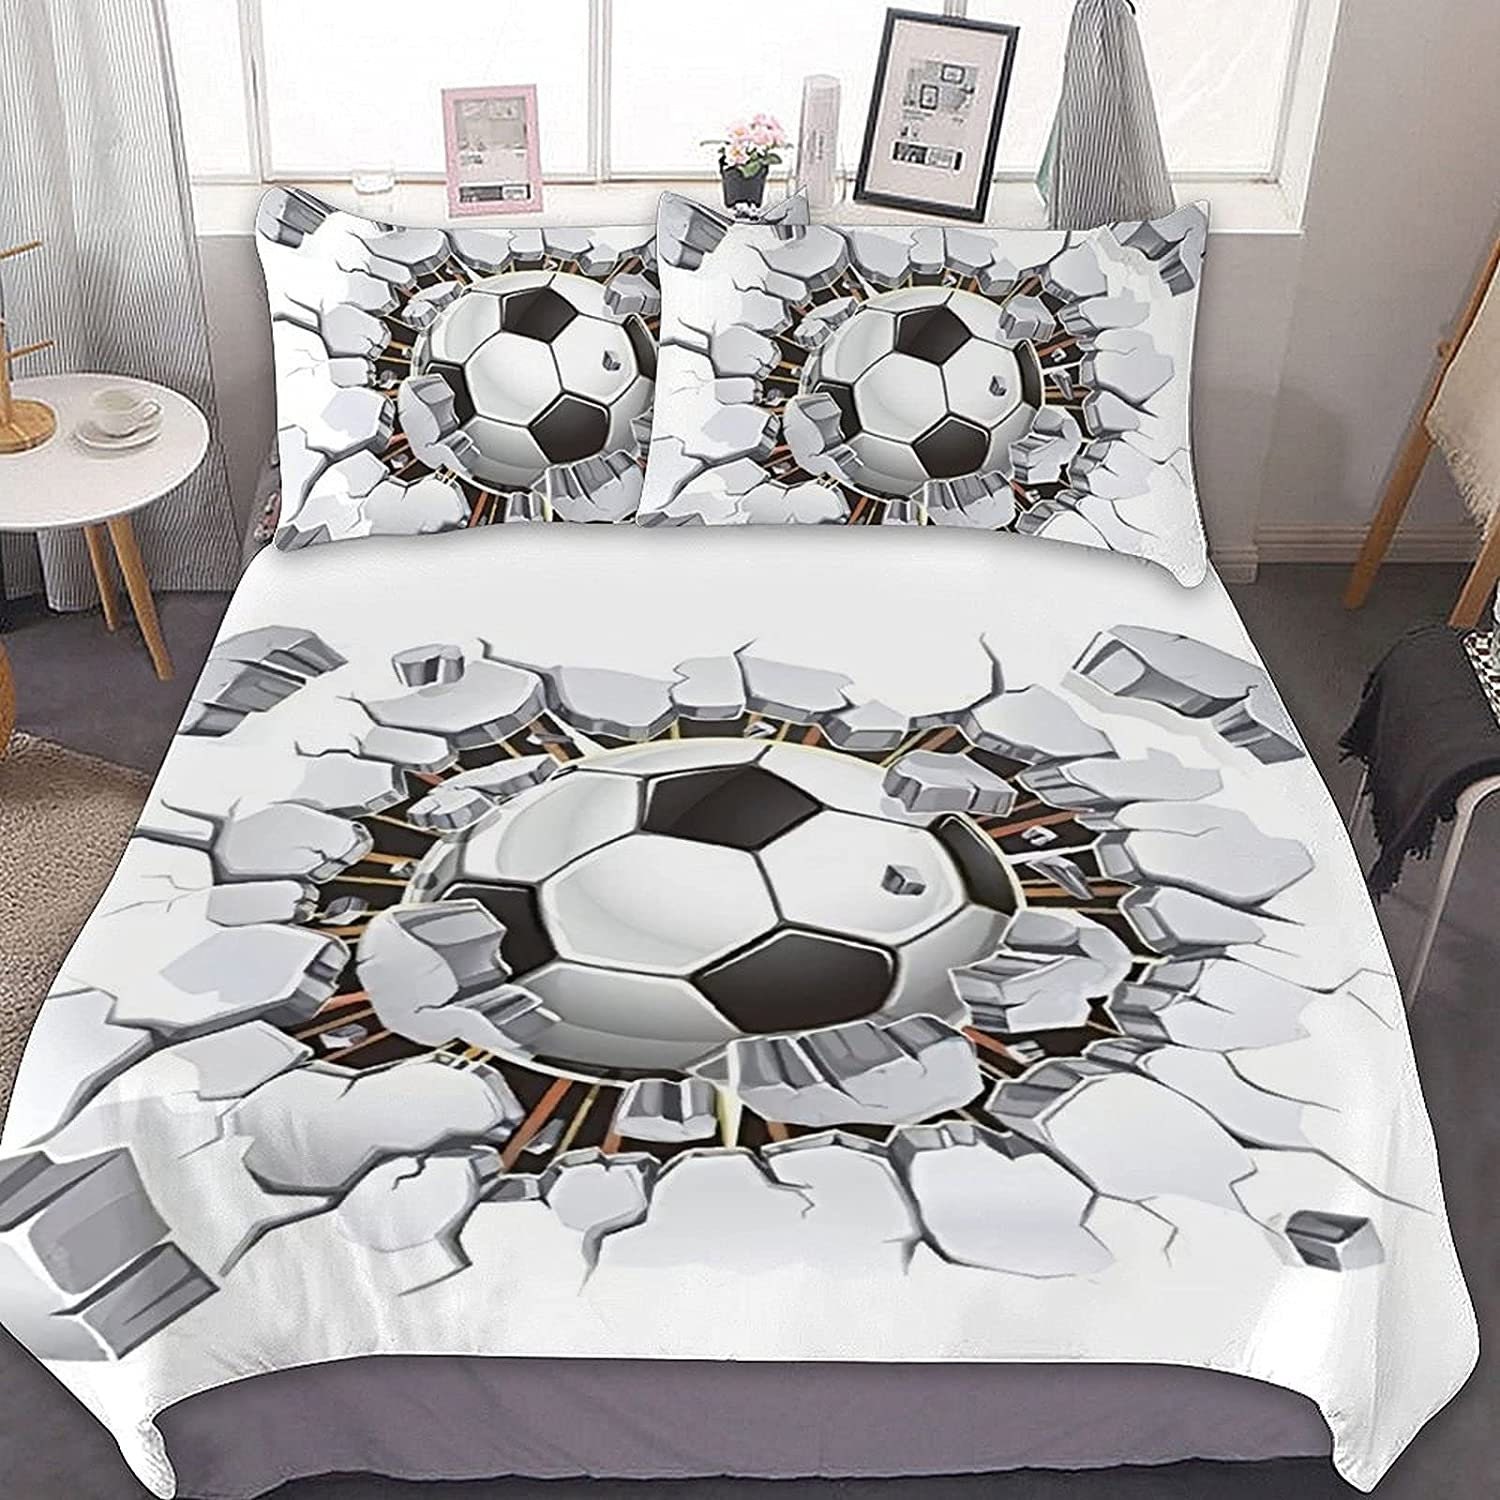 3D Soccer Ball Comforter Queen Bedding Set of 31 Duvet Cover - Etsy UK